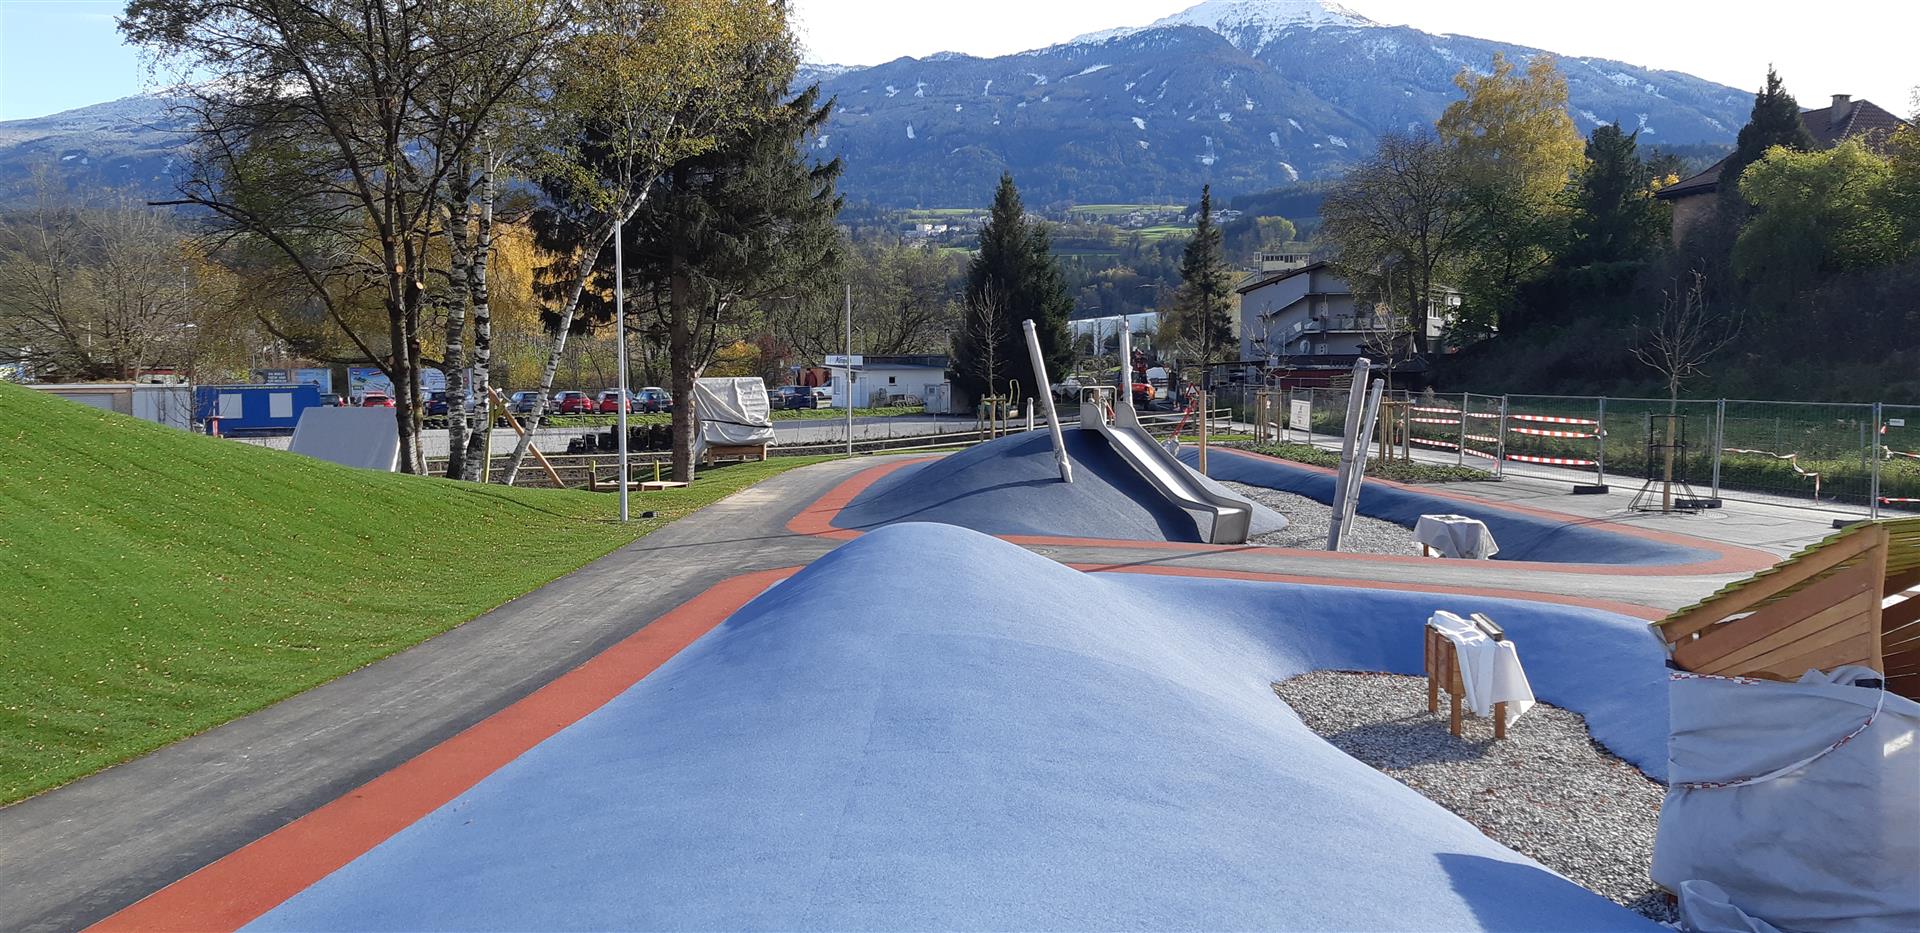 Freizeitpark, Innsbruck - Civiele bouwkunde